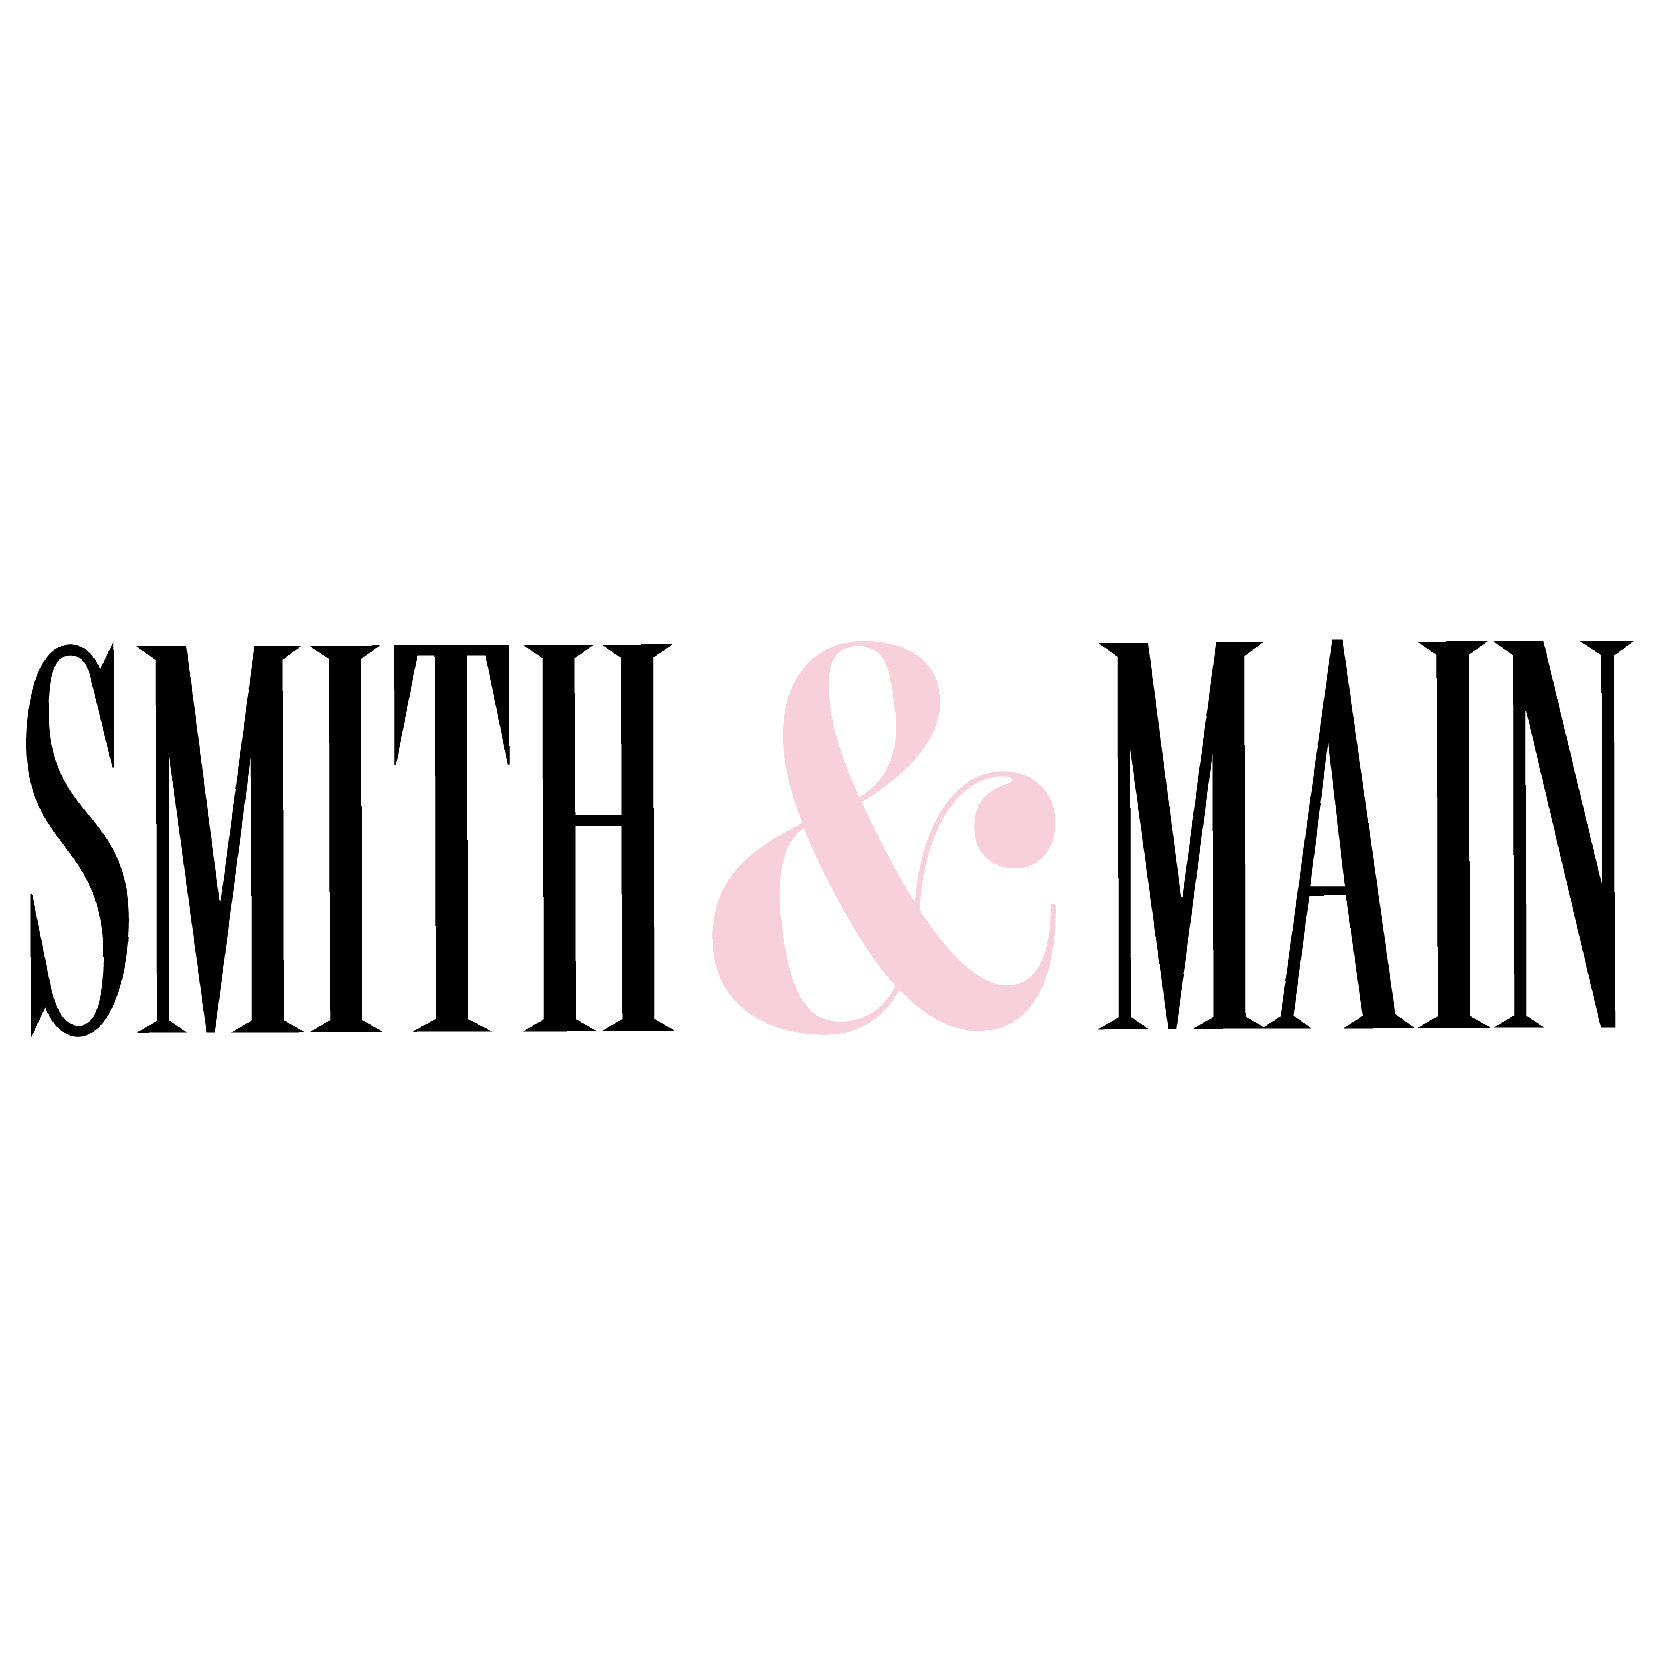 Smith & Main